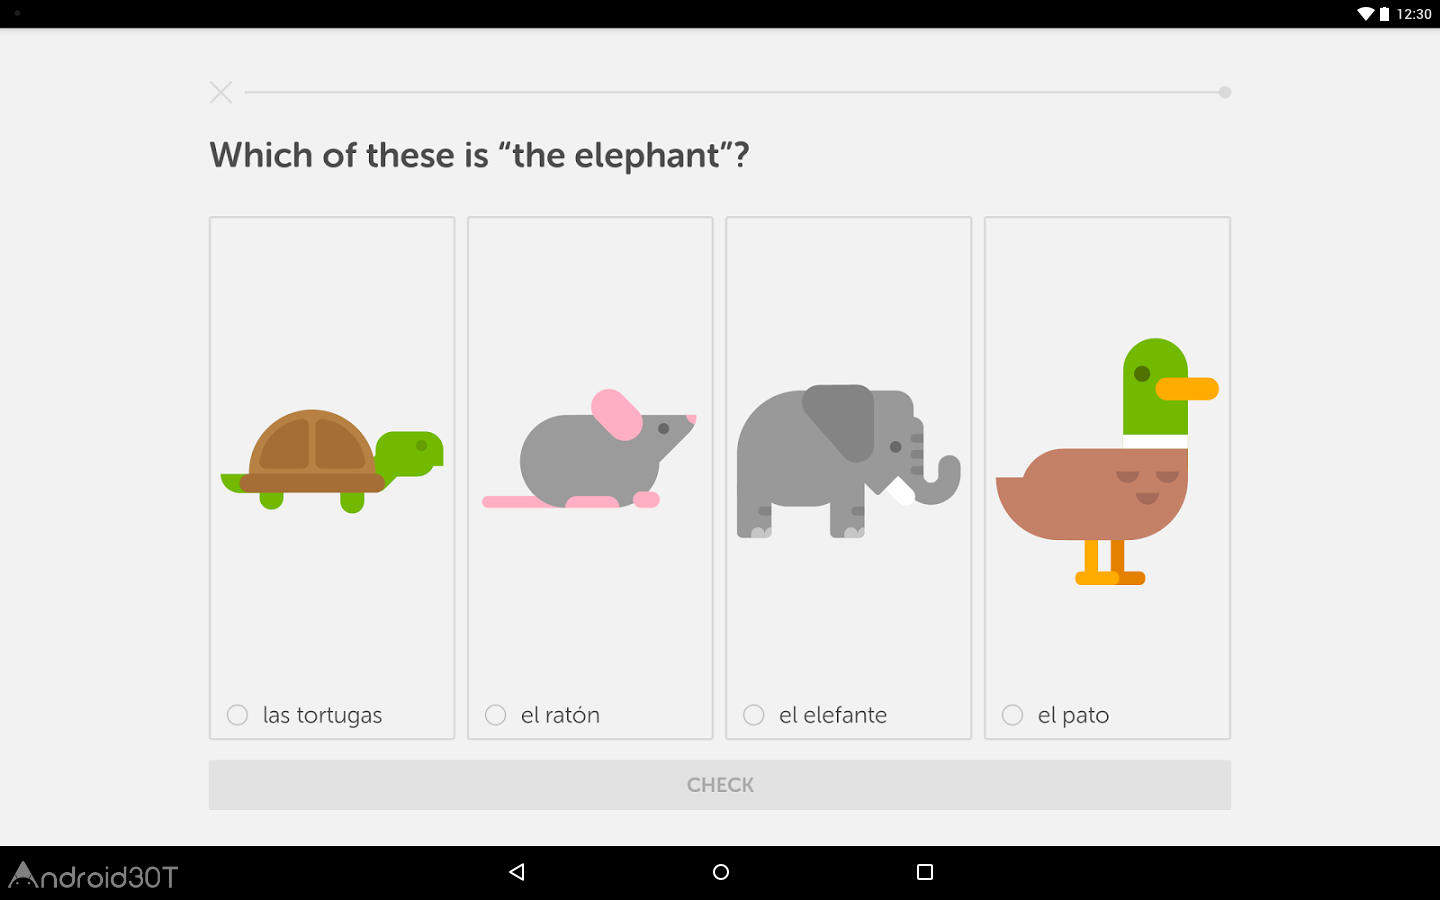 دانلود Duolingo 5.97.2 – برنامه یادگیری زبان های خارجی اندروید